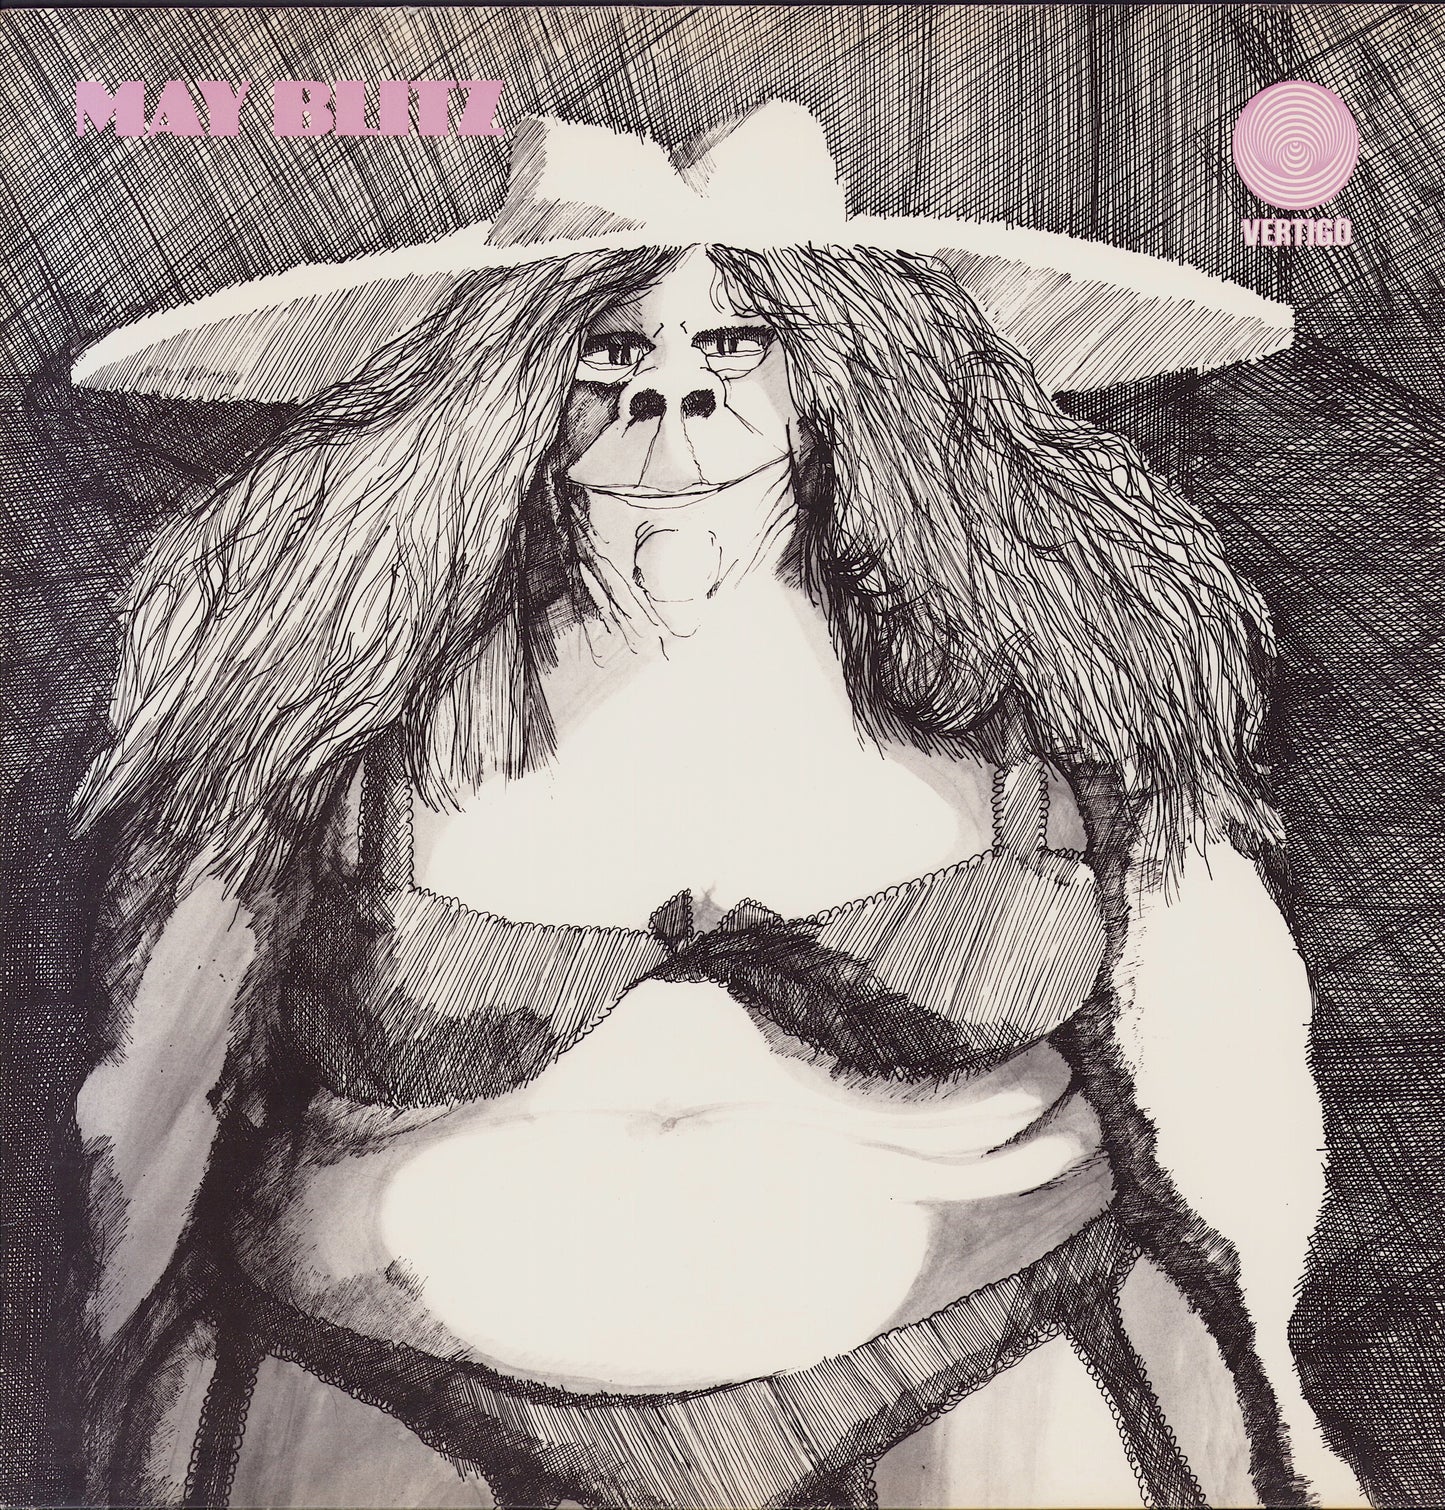 May Blitz - May Blitz Vinyl LP DE 1970